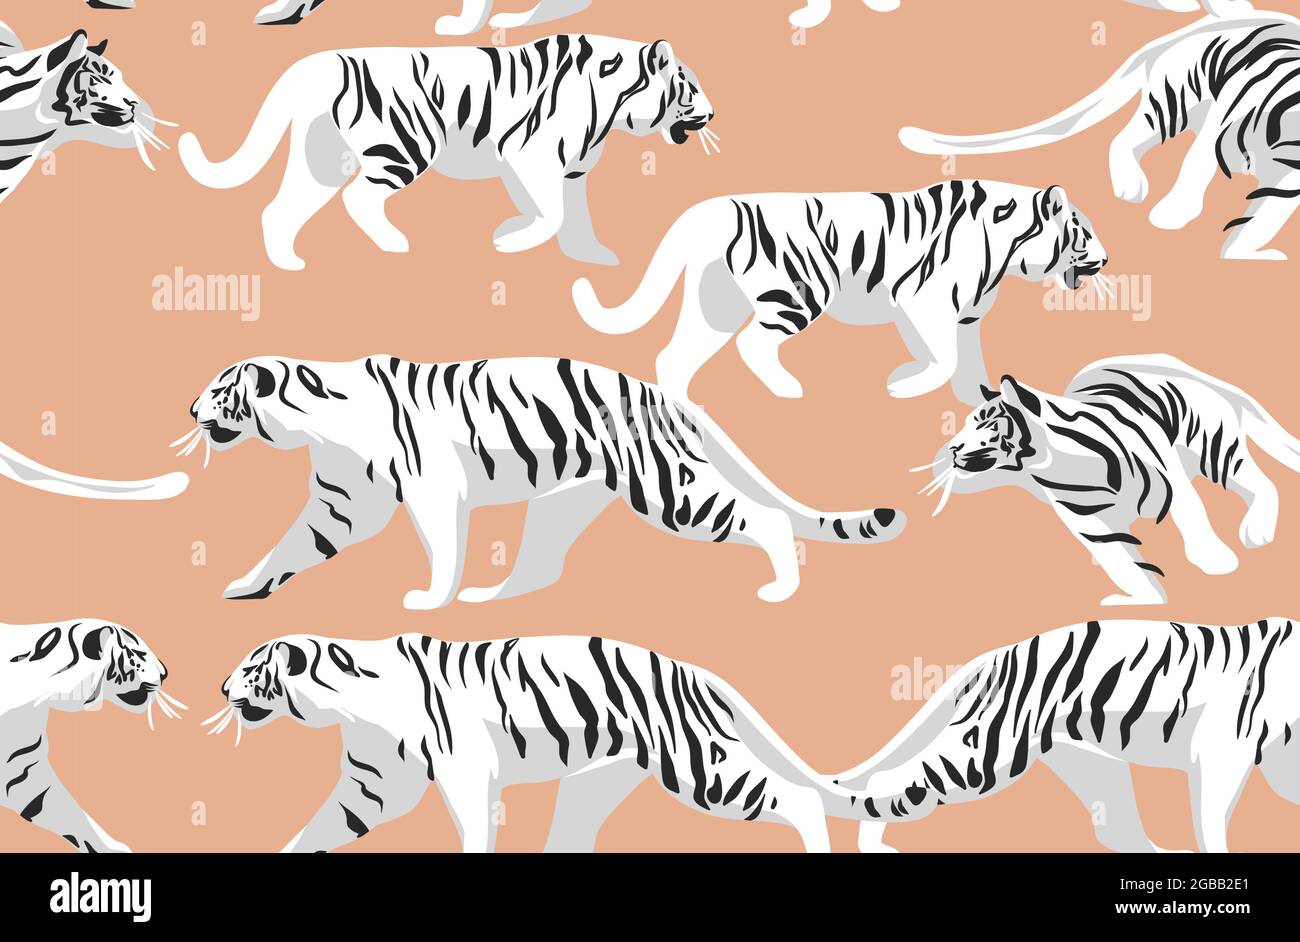 Dessin à la main vecteur résumé stock d'illustrations graphiques modernes, safari bohème imprimé contemporain sans couture avec animaux exotiques tigres sauvages Illustration de Vecteur